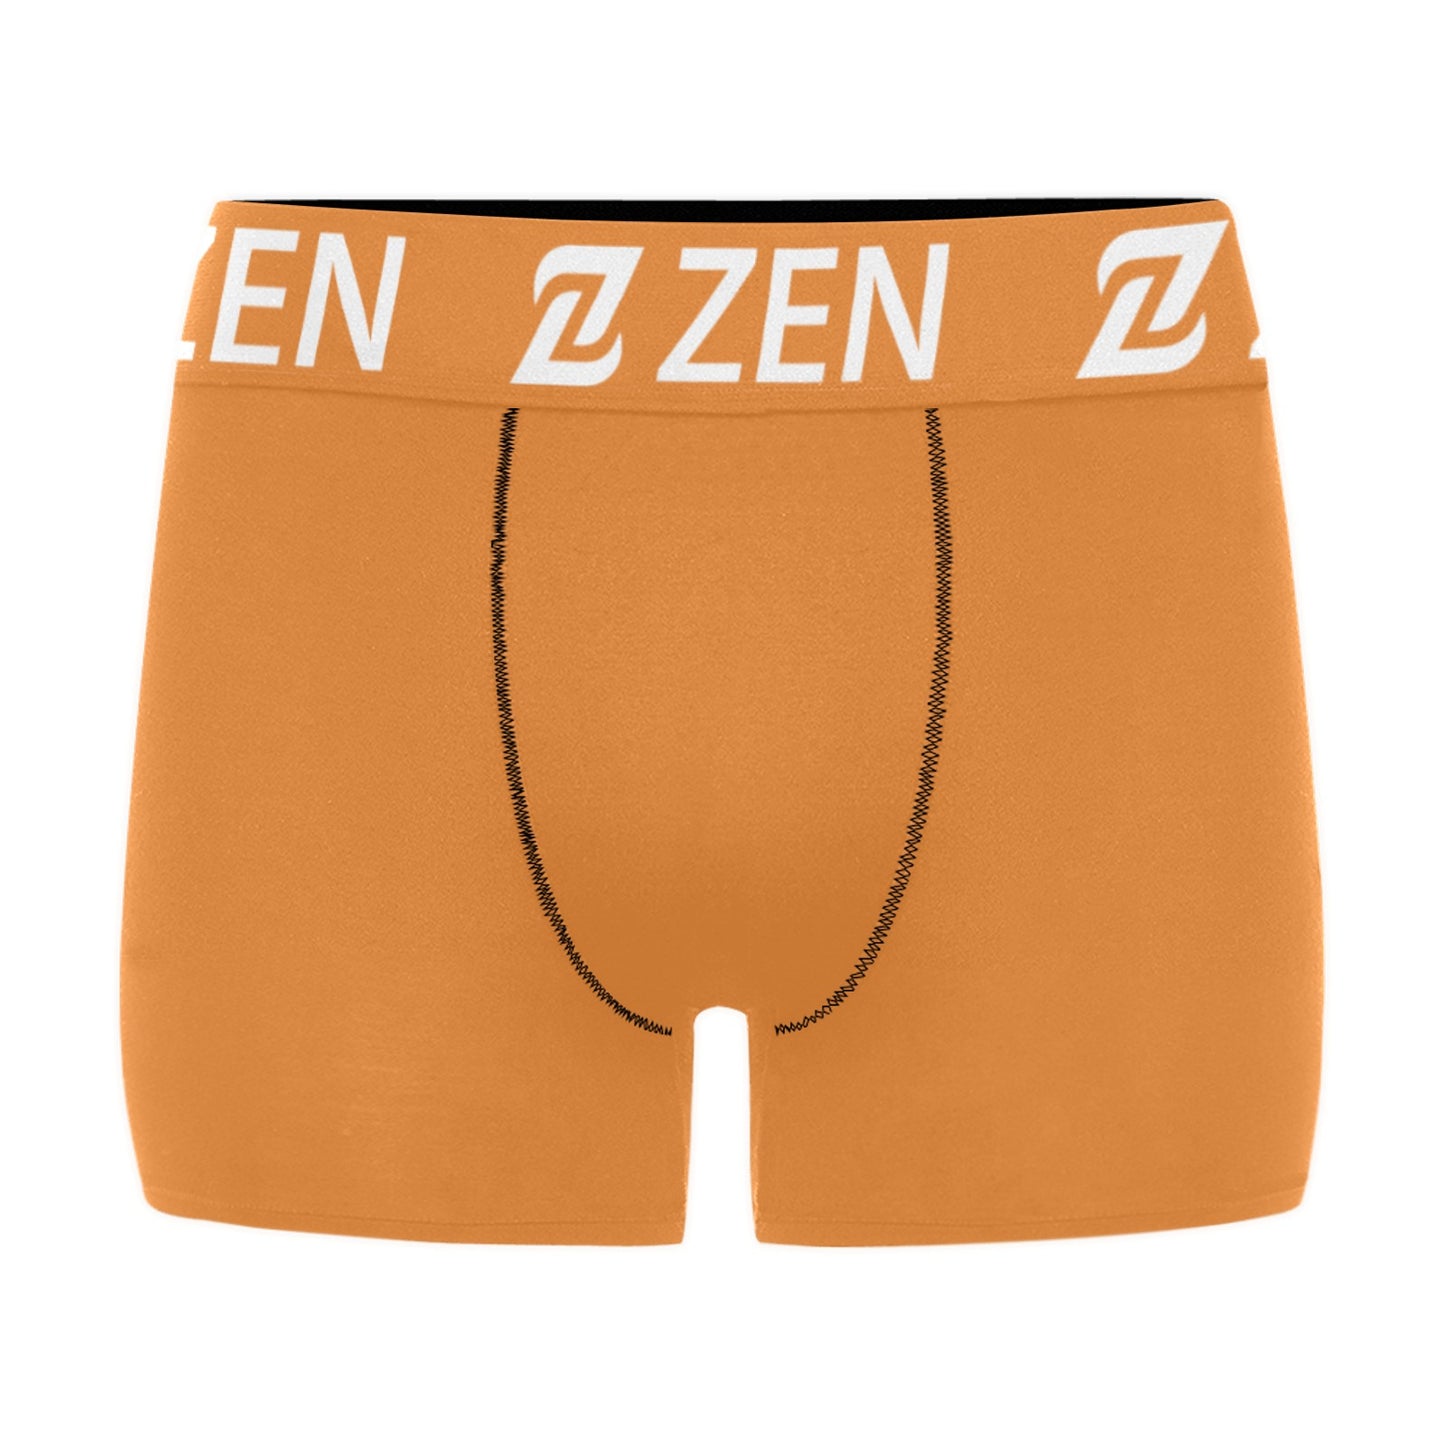 Zen Waistband - Zen Orange